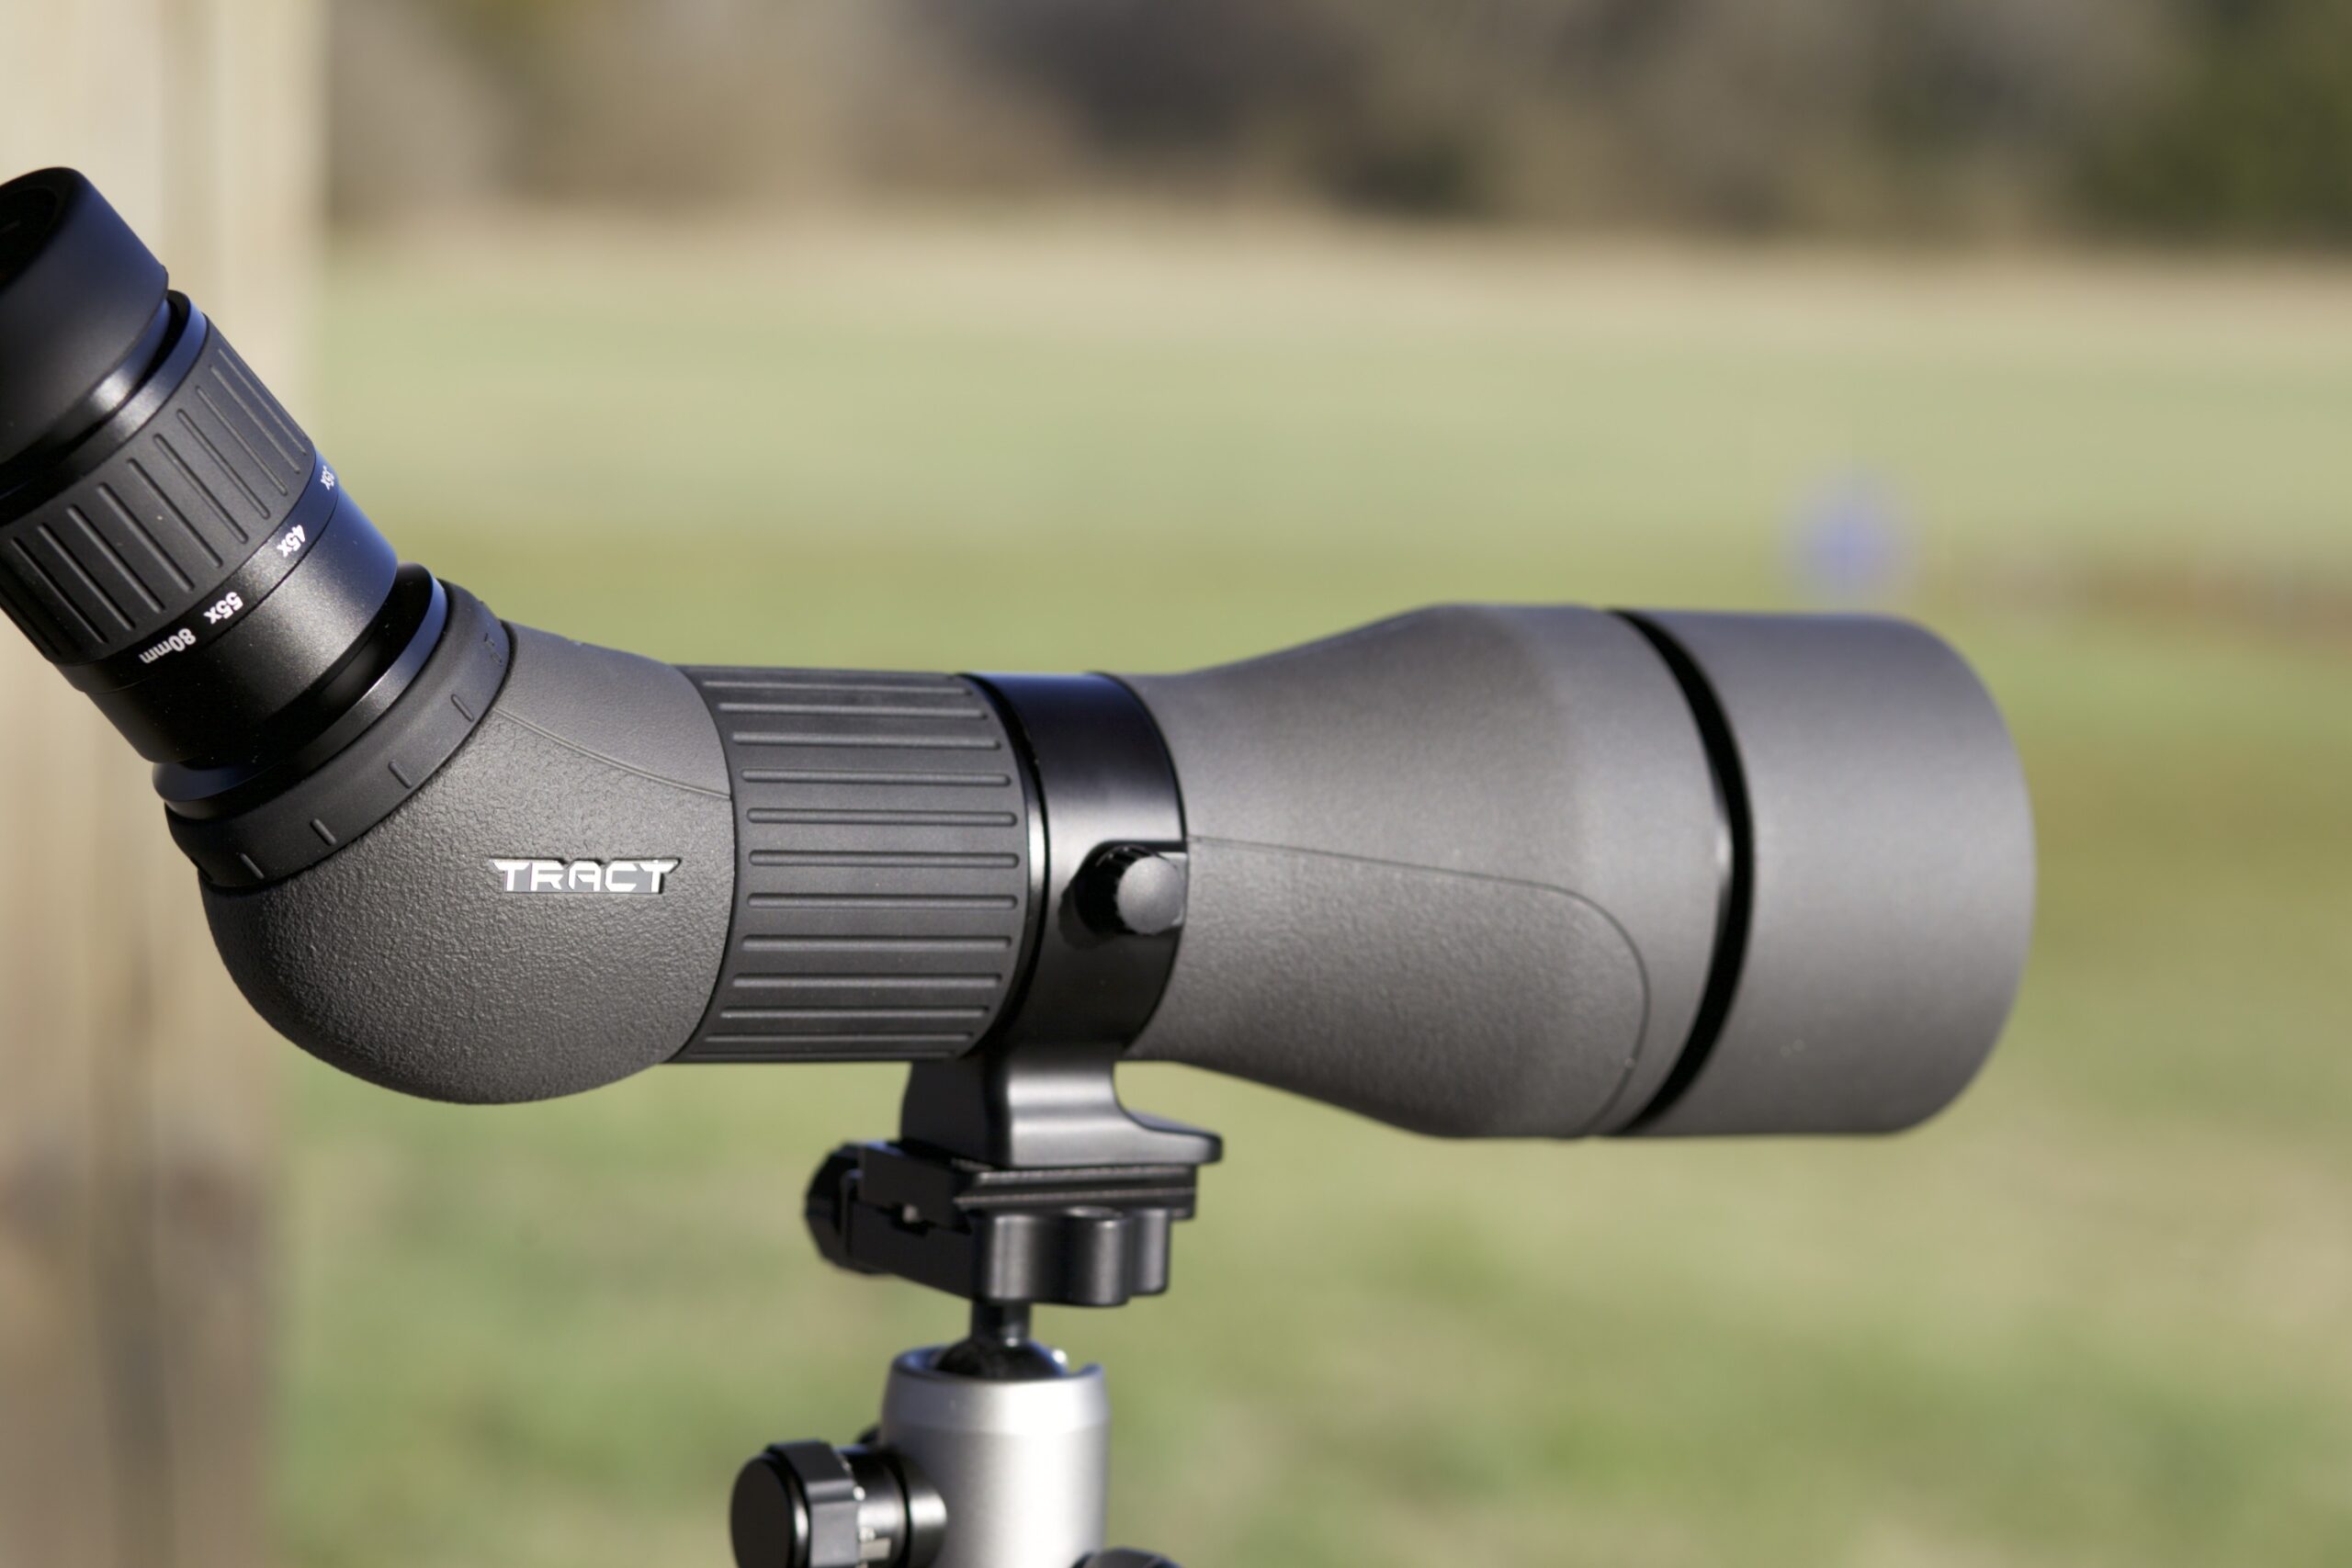 Finding the Best Spotting Scope For Long Range Shooting